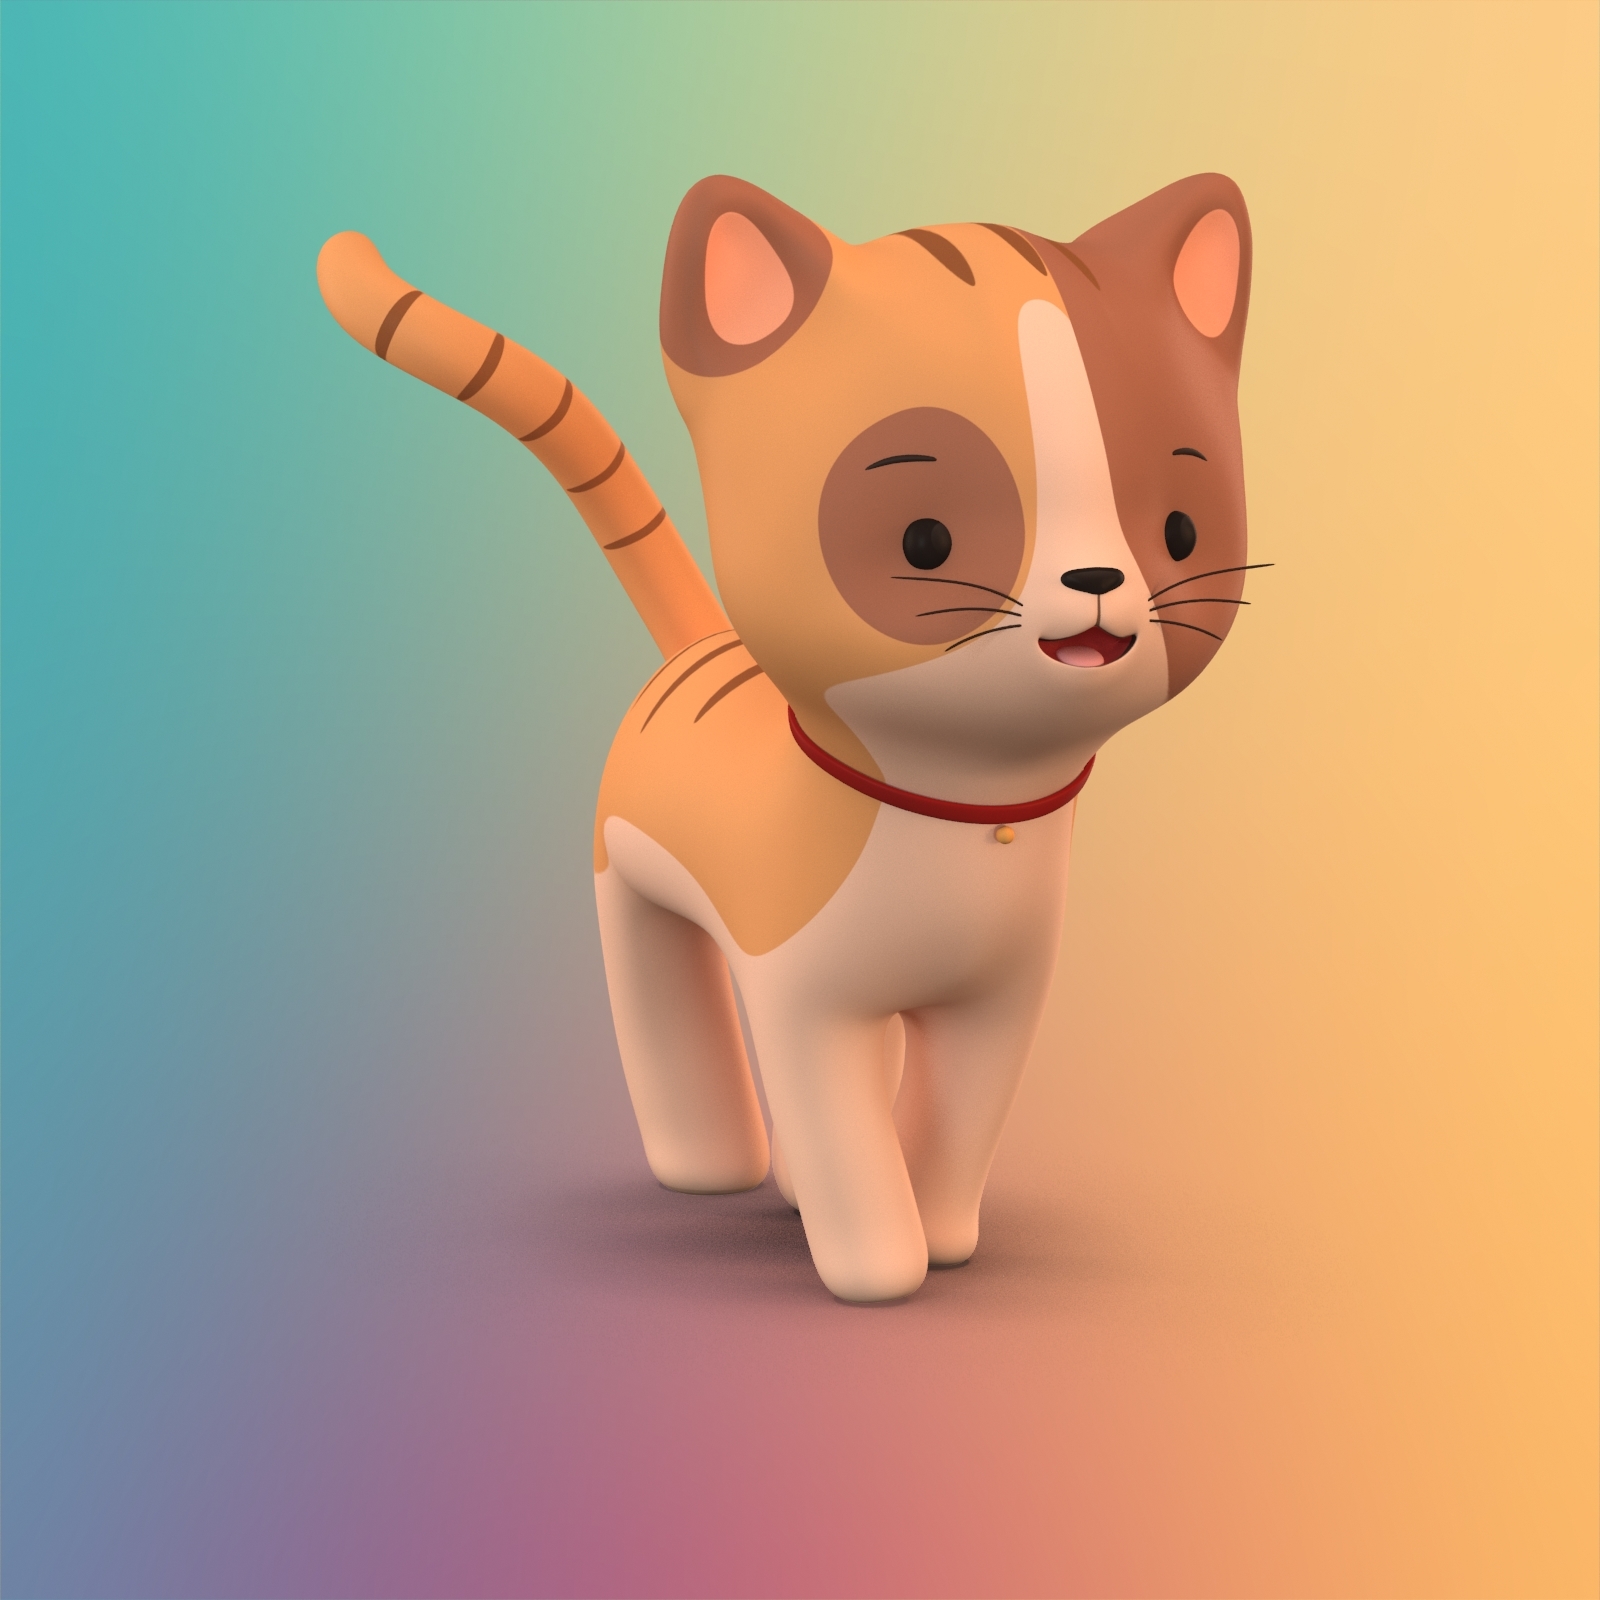 Cute cartoon cat 3D model - TurboSquid 1206414